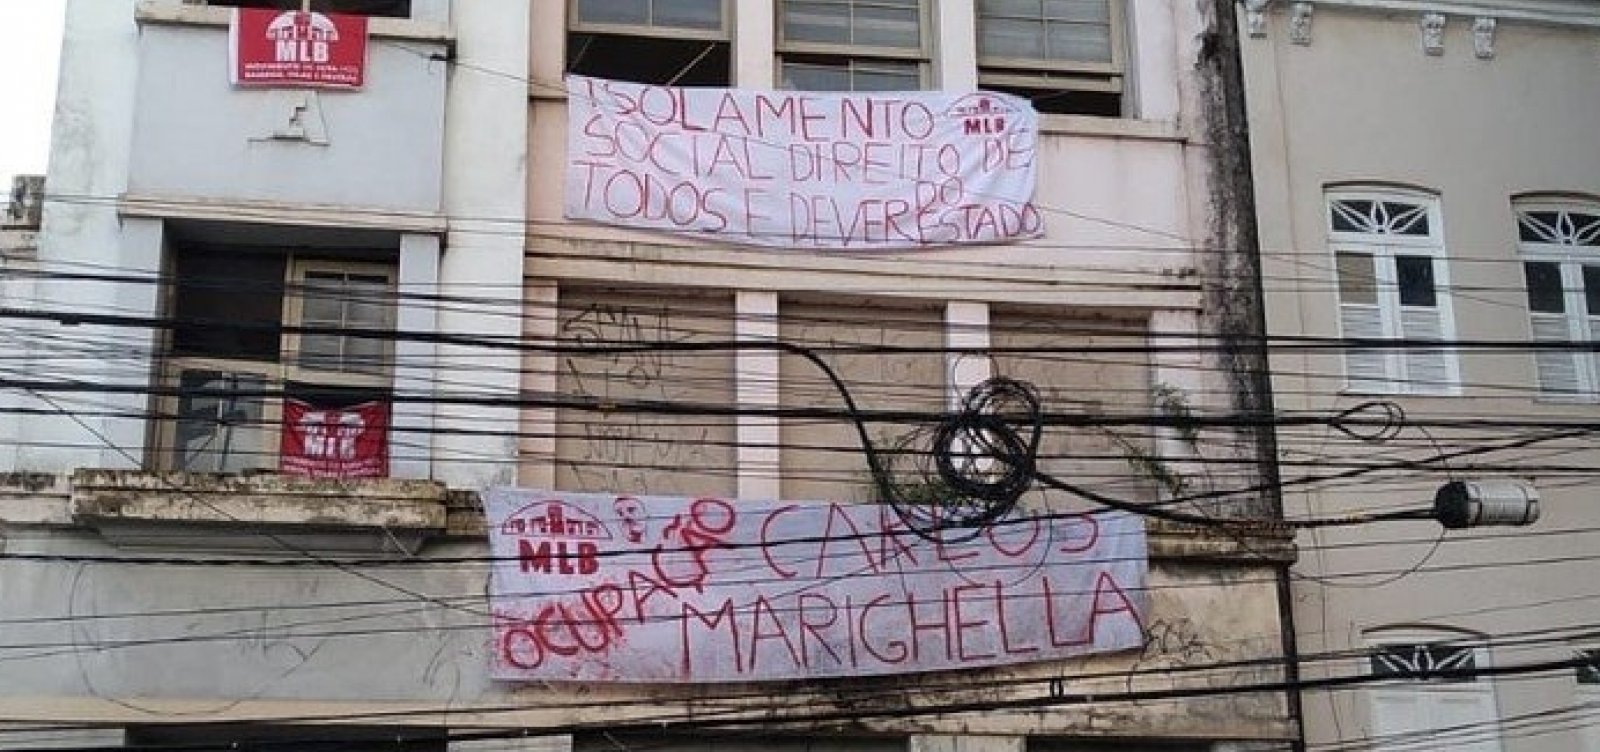 Sem teto ocupam prédio na Avenida Sete e homenageiam guerrilheiro Carlos Marighella